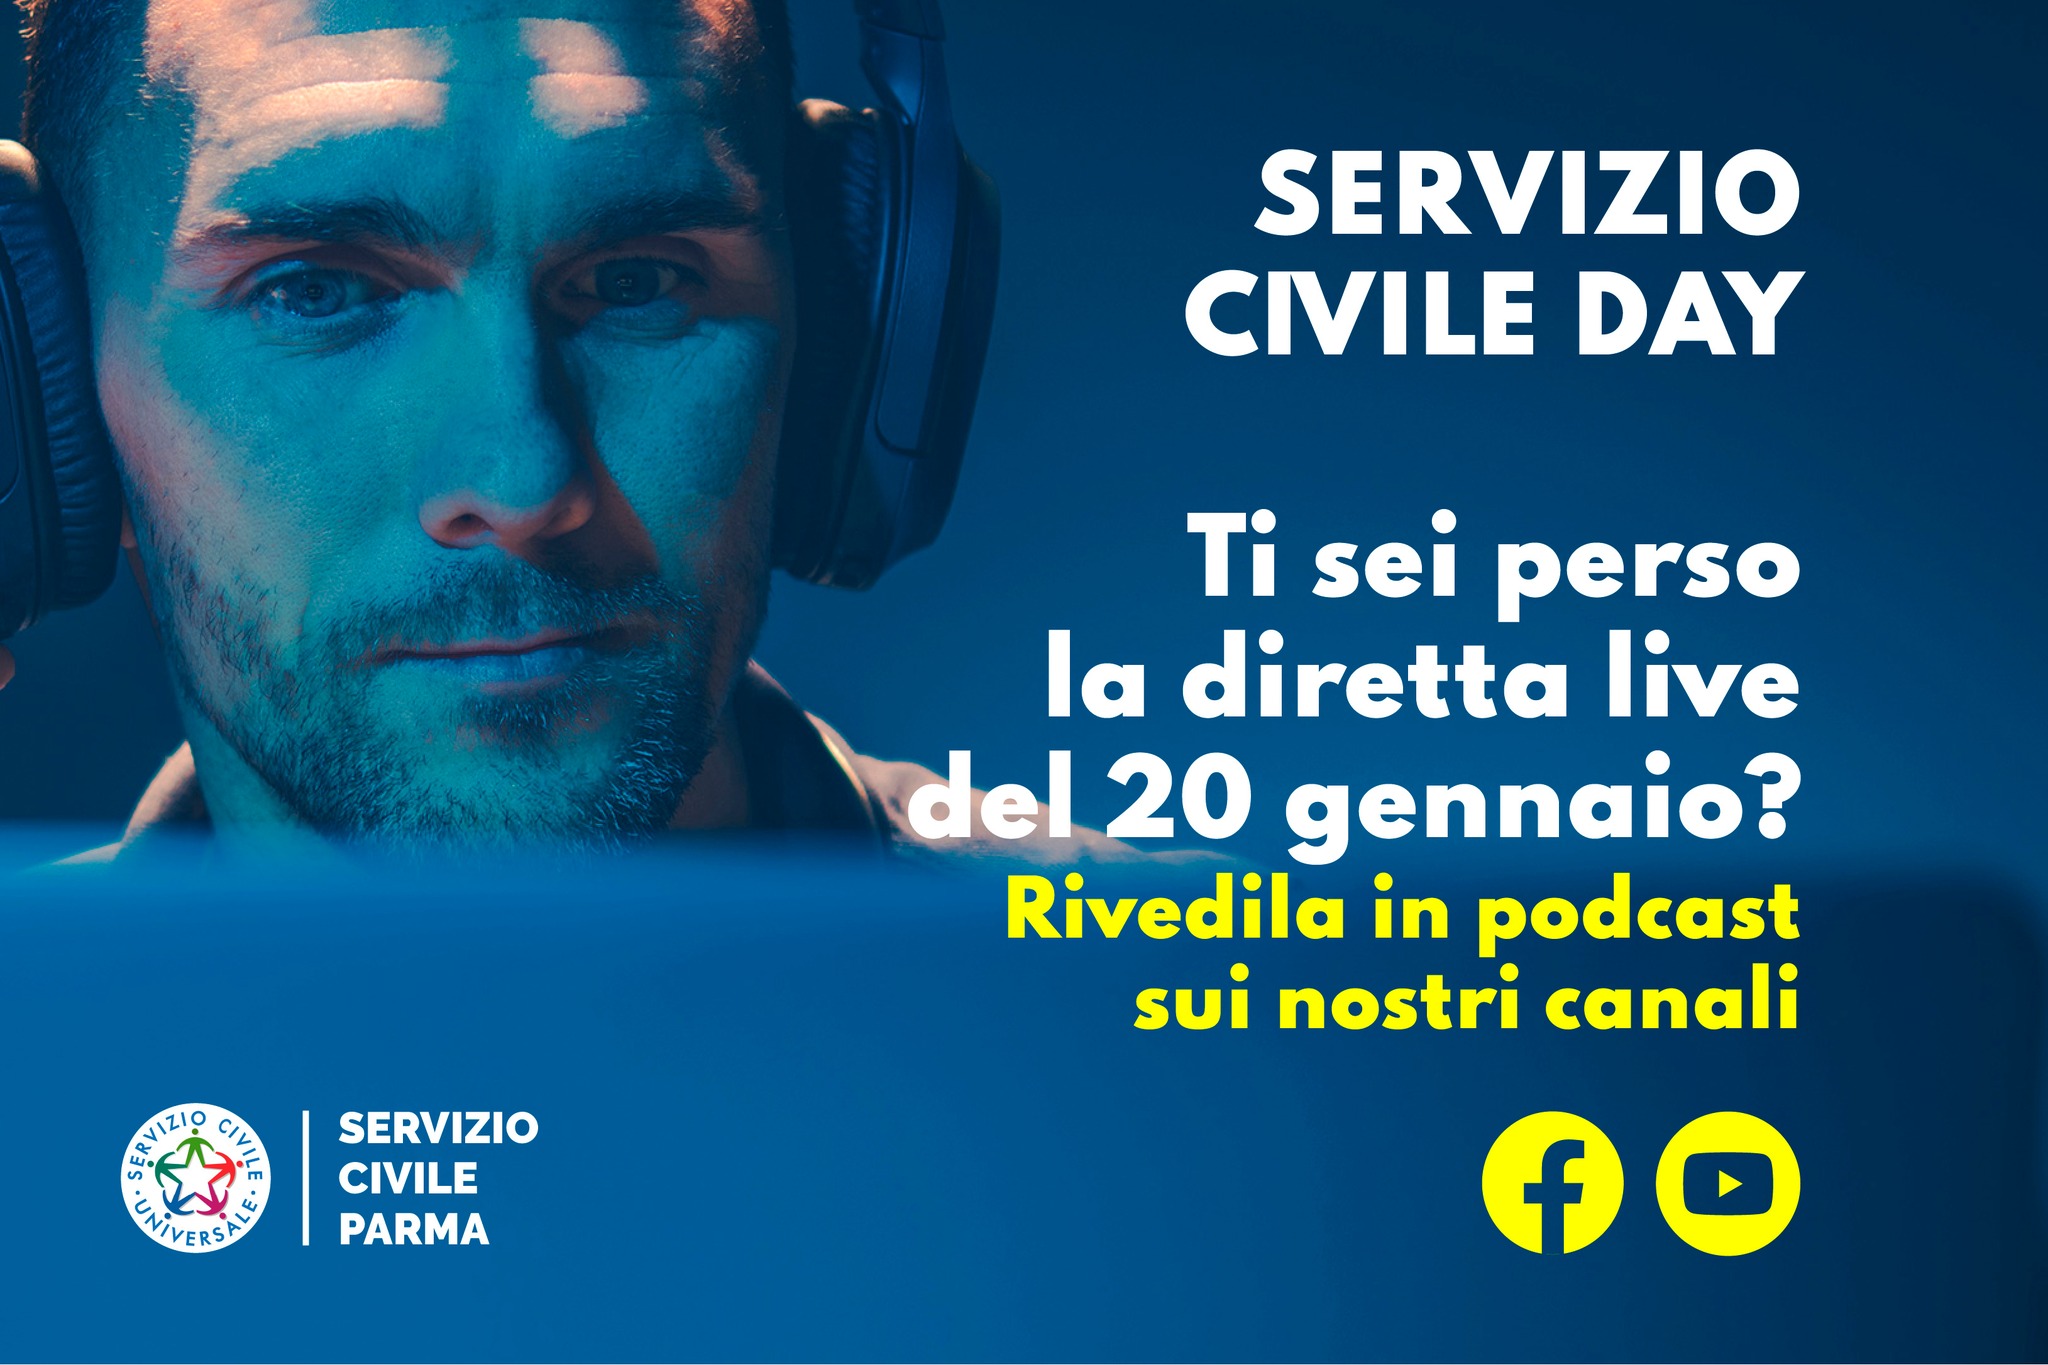 https://www.serviziocivileparma.it/web/servizio-civile-day-rivedilo-in-podcast/